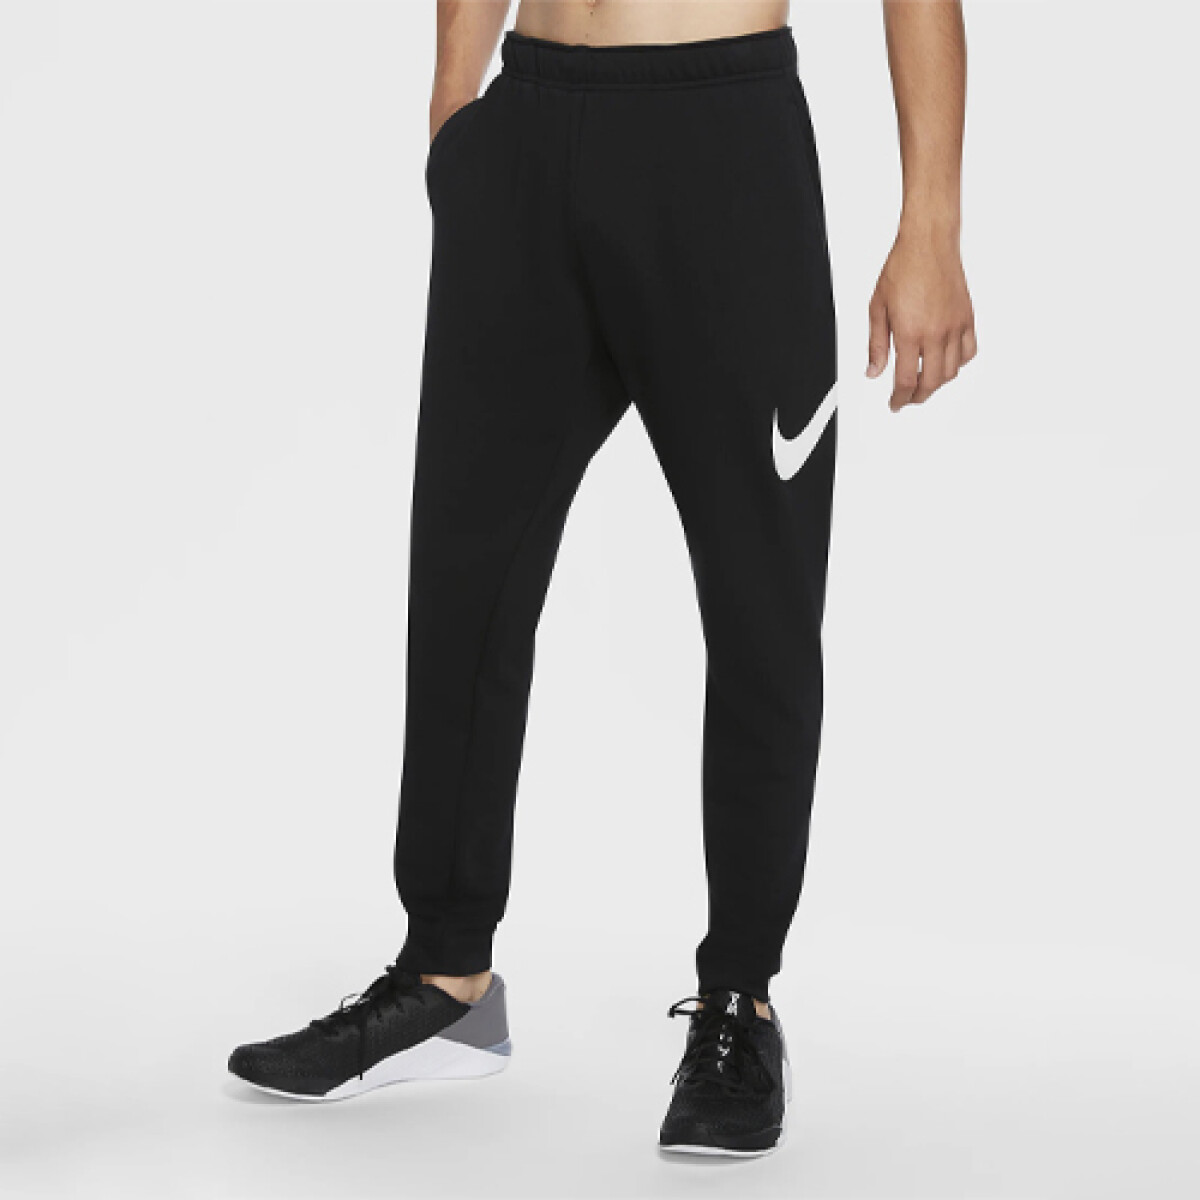 Pantalon Nike Dri-fit Bundle Feet 